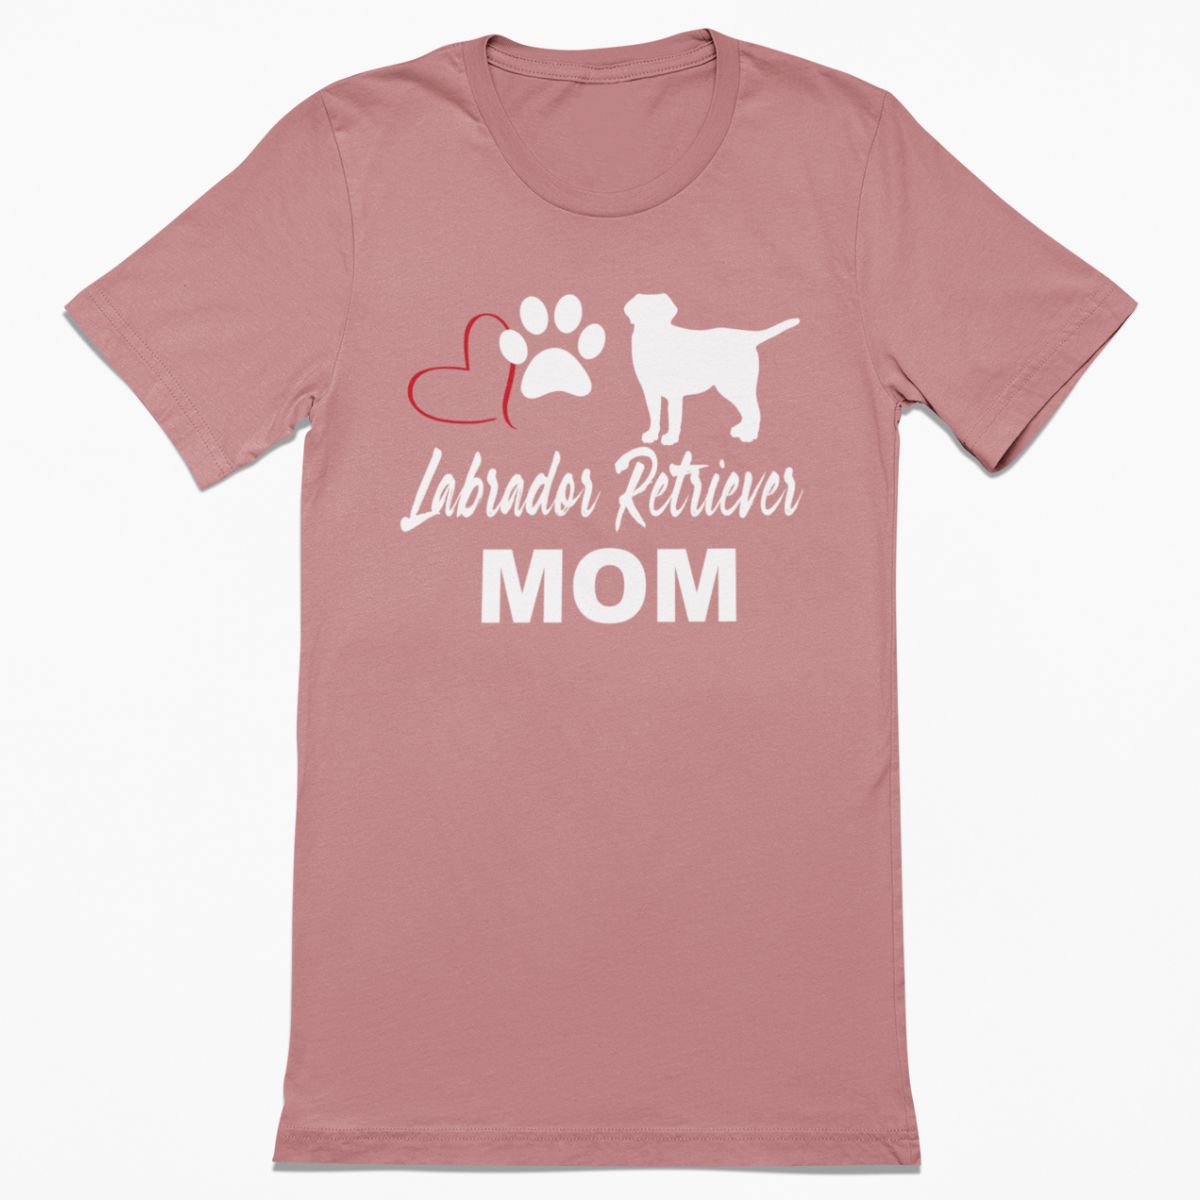 Labrador Retriever Mom Shirt